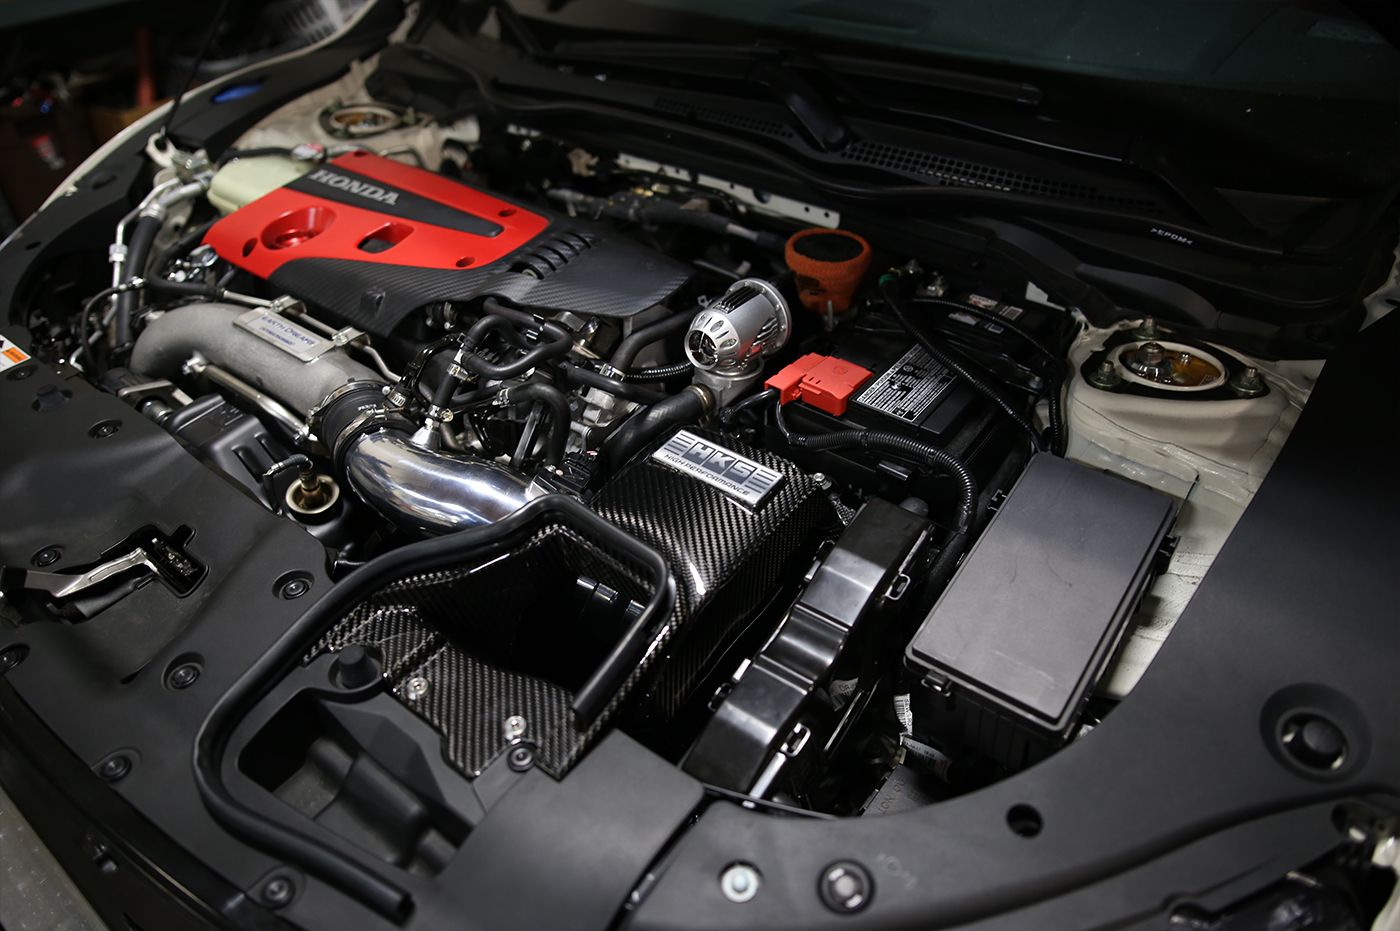 HKS Cold Air Intake Full Kit (includes AFR Air / Fuel Ratio Regulator) - Honda Civic Type-R 17+ FK8 K20C